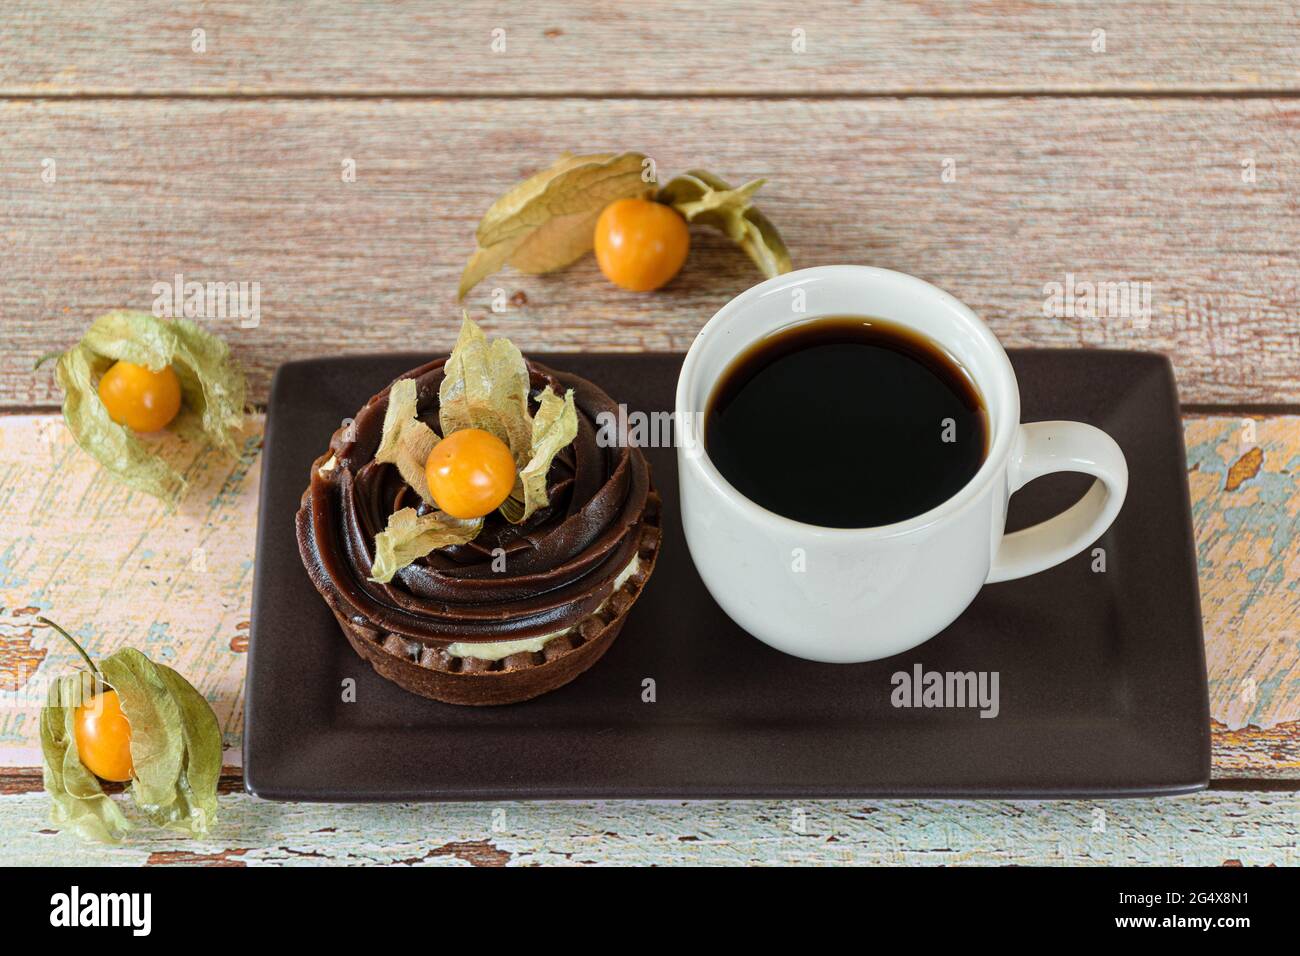 Mini torta con crema di mascarpone e ganache al cioccolato, decorata con physalis, accanto ad una tazza di caffè. Foto Stock